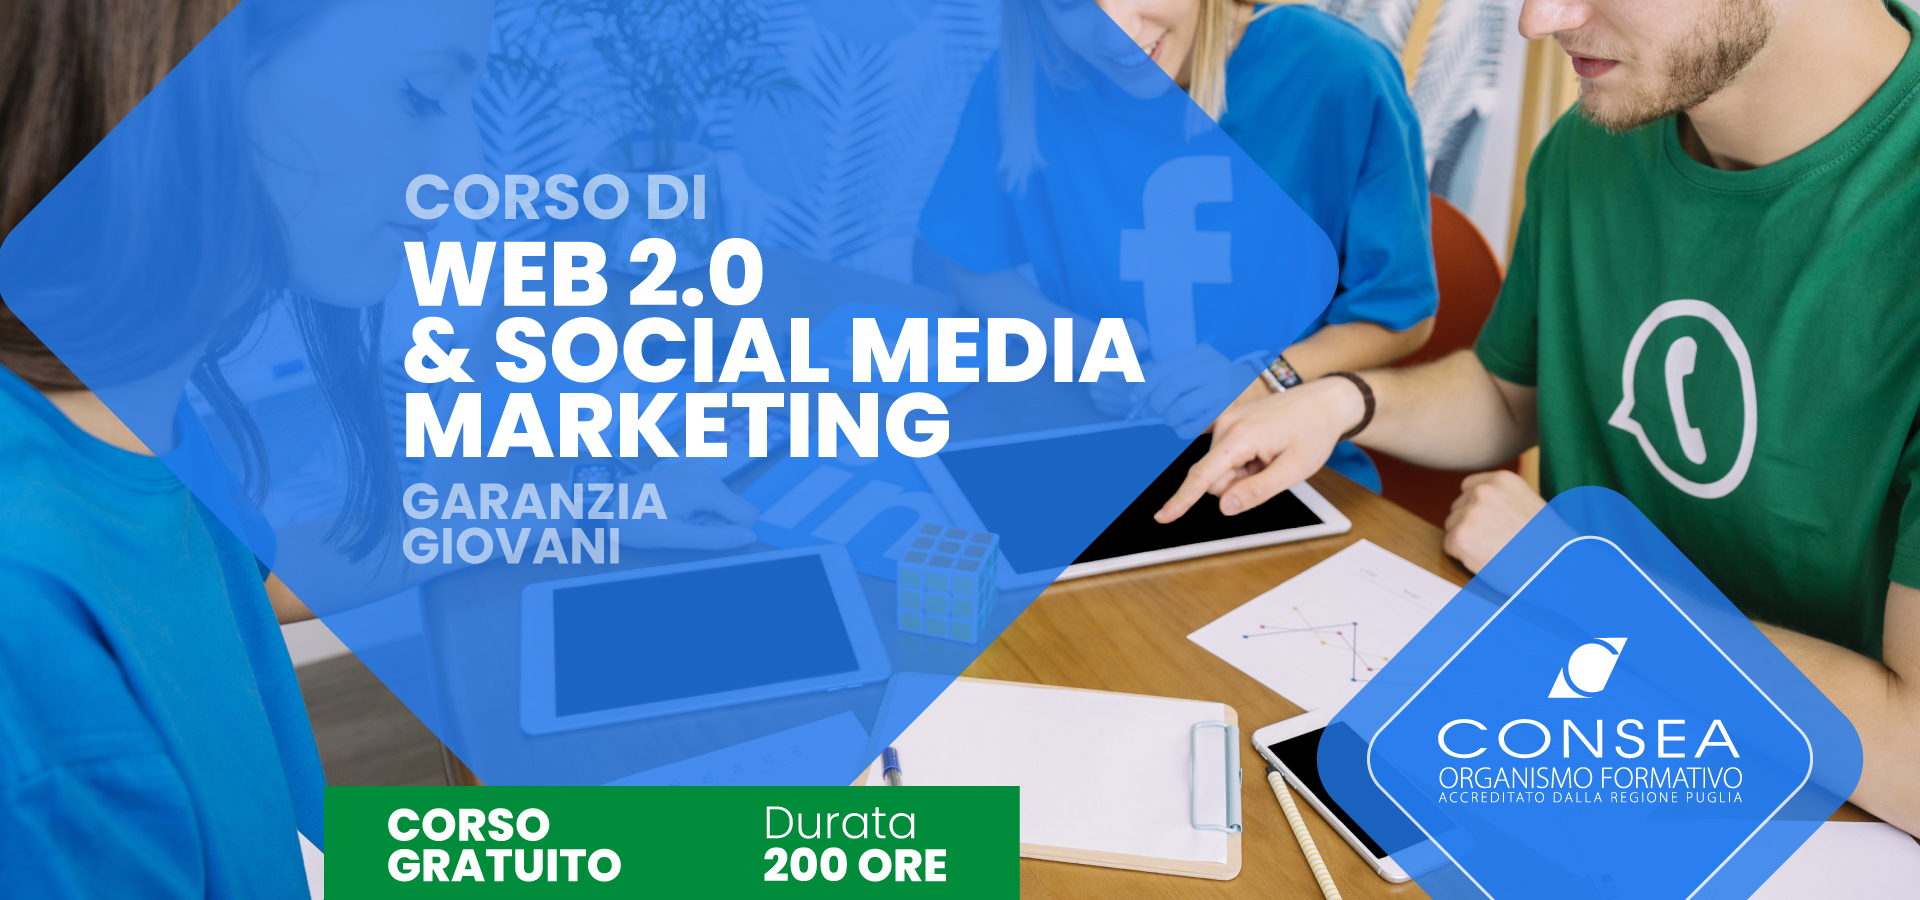 Corso gratuito di Web 2.0 e Social Media Marketing – Garanzia Giovani